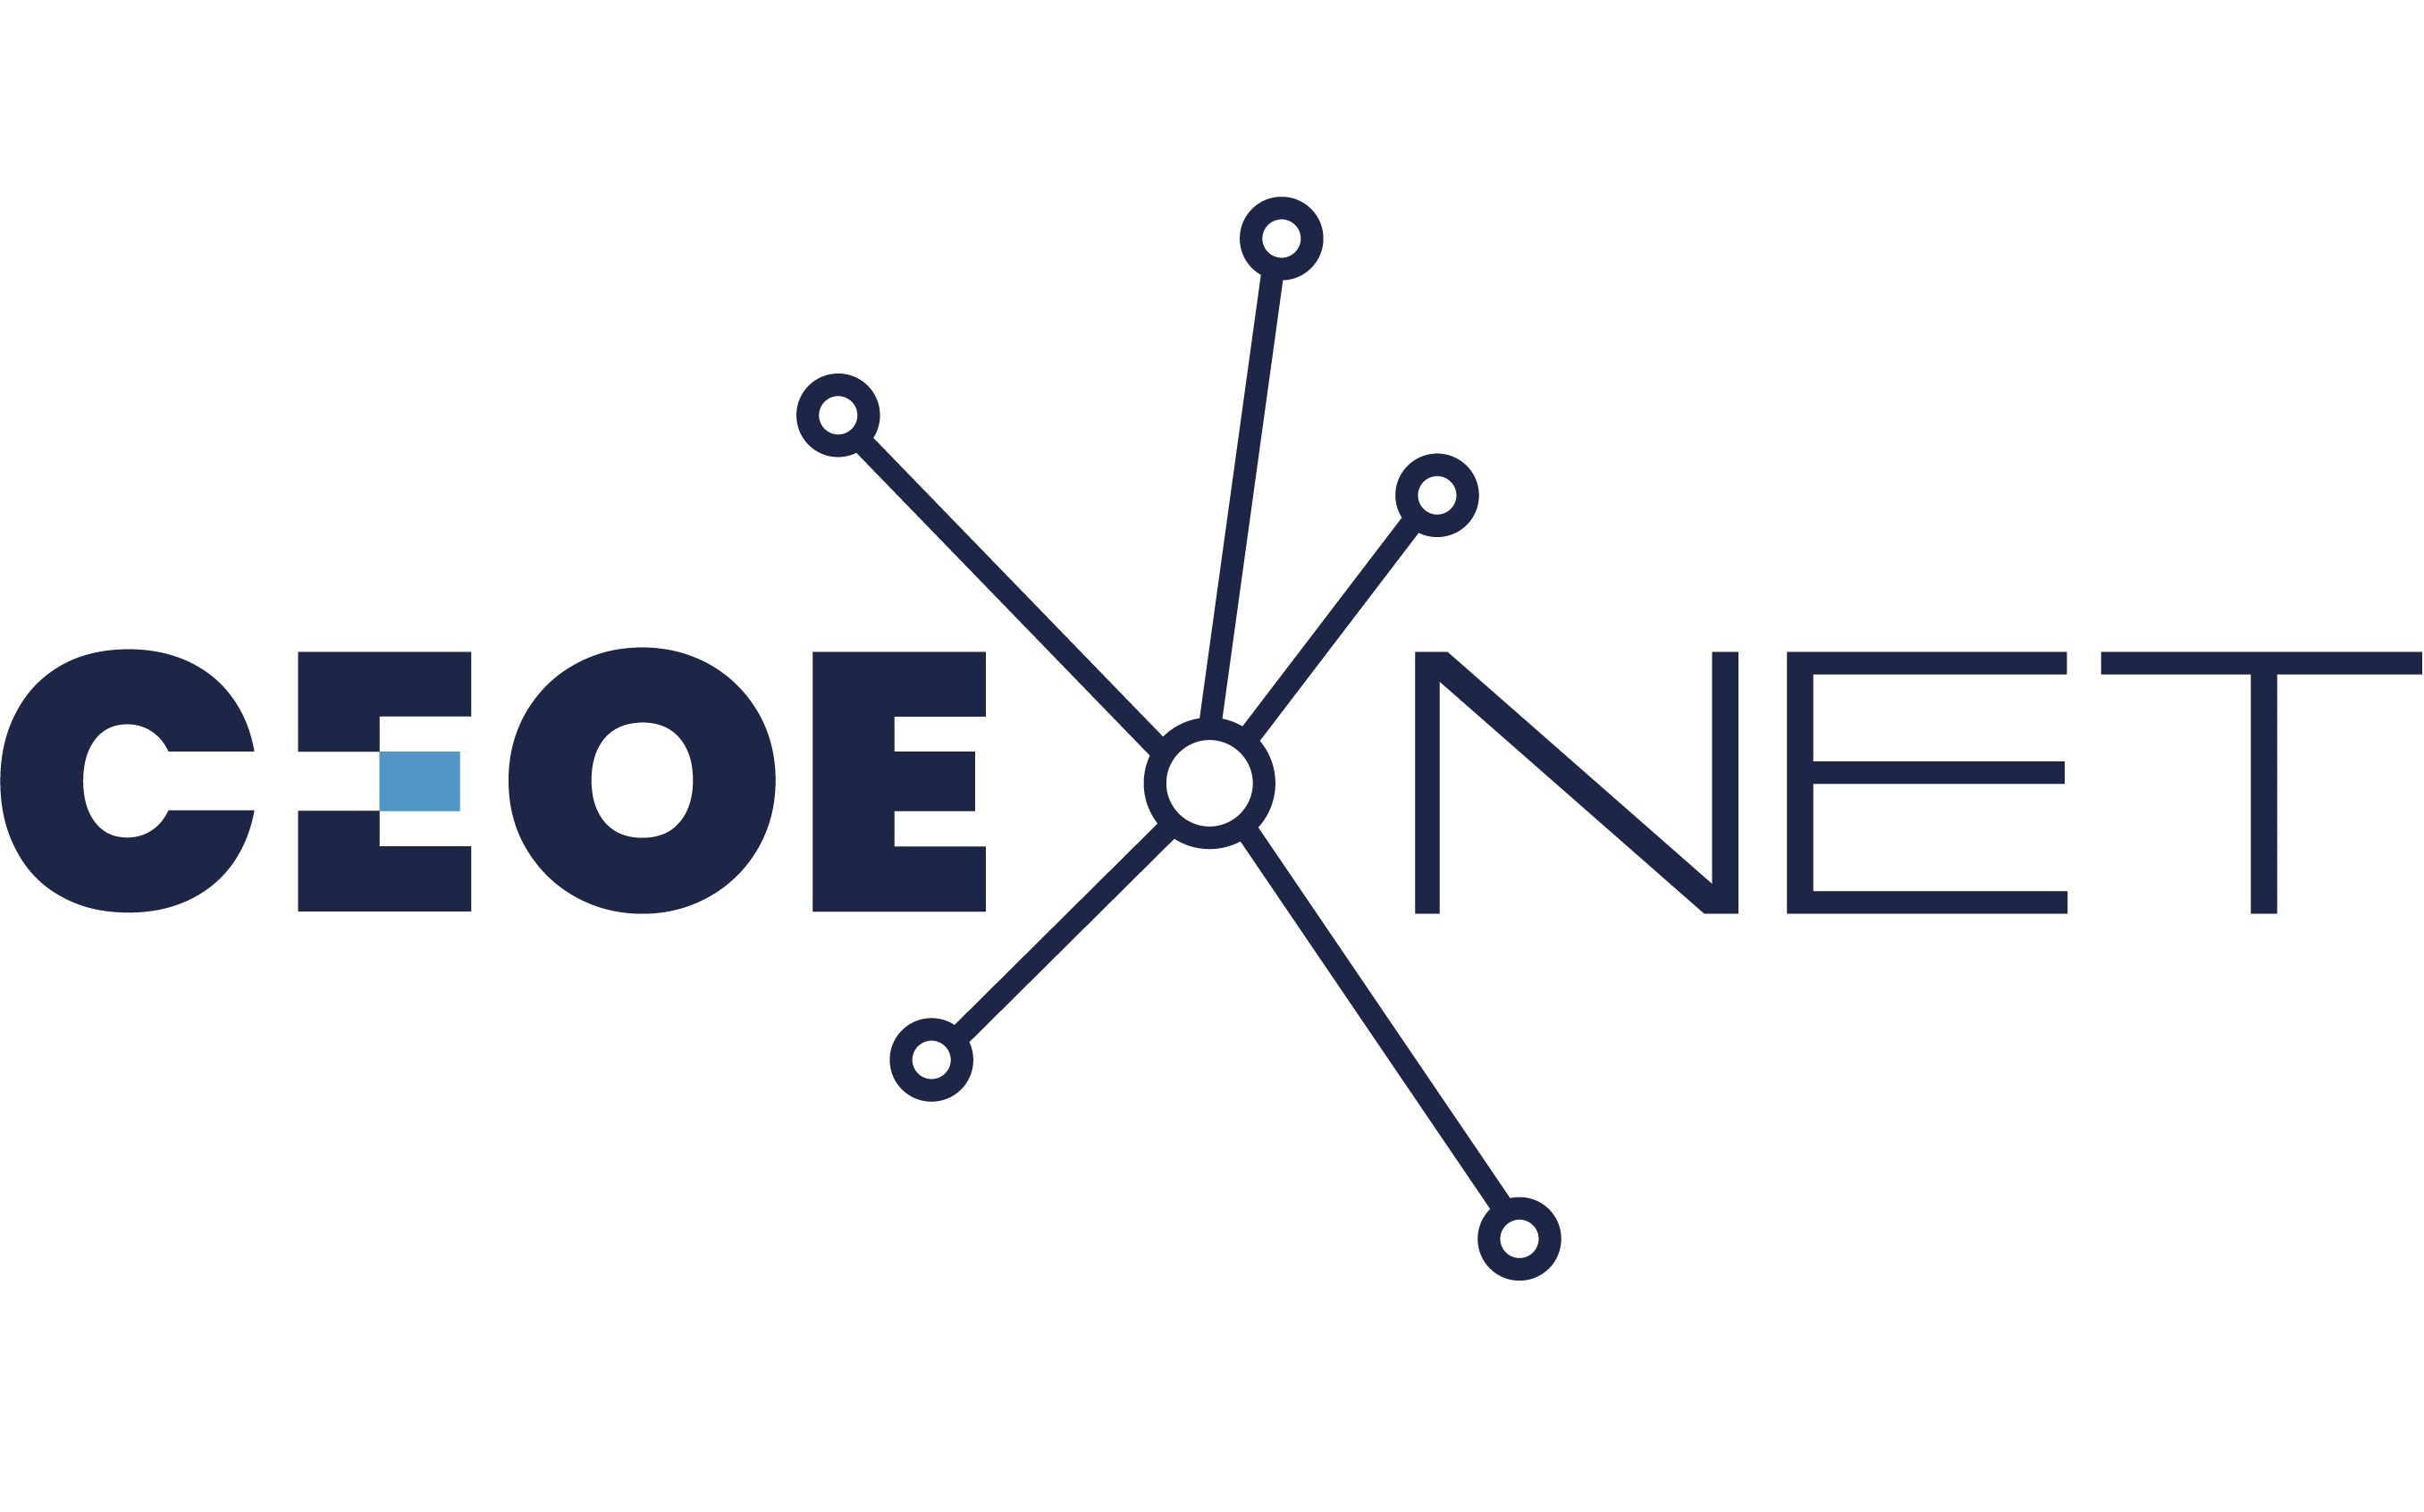 CEOE Net logo